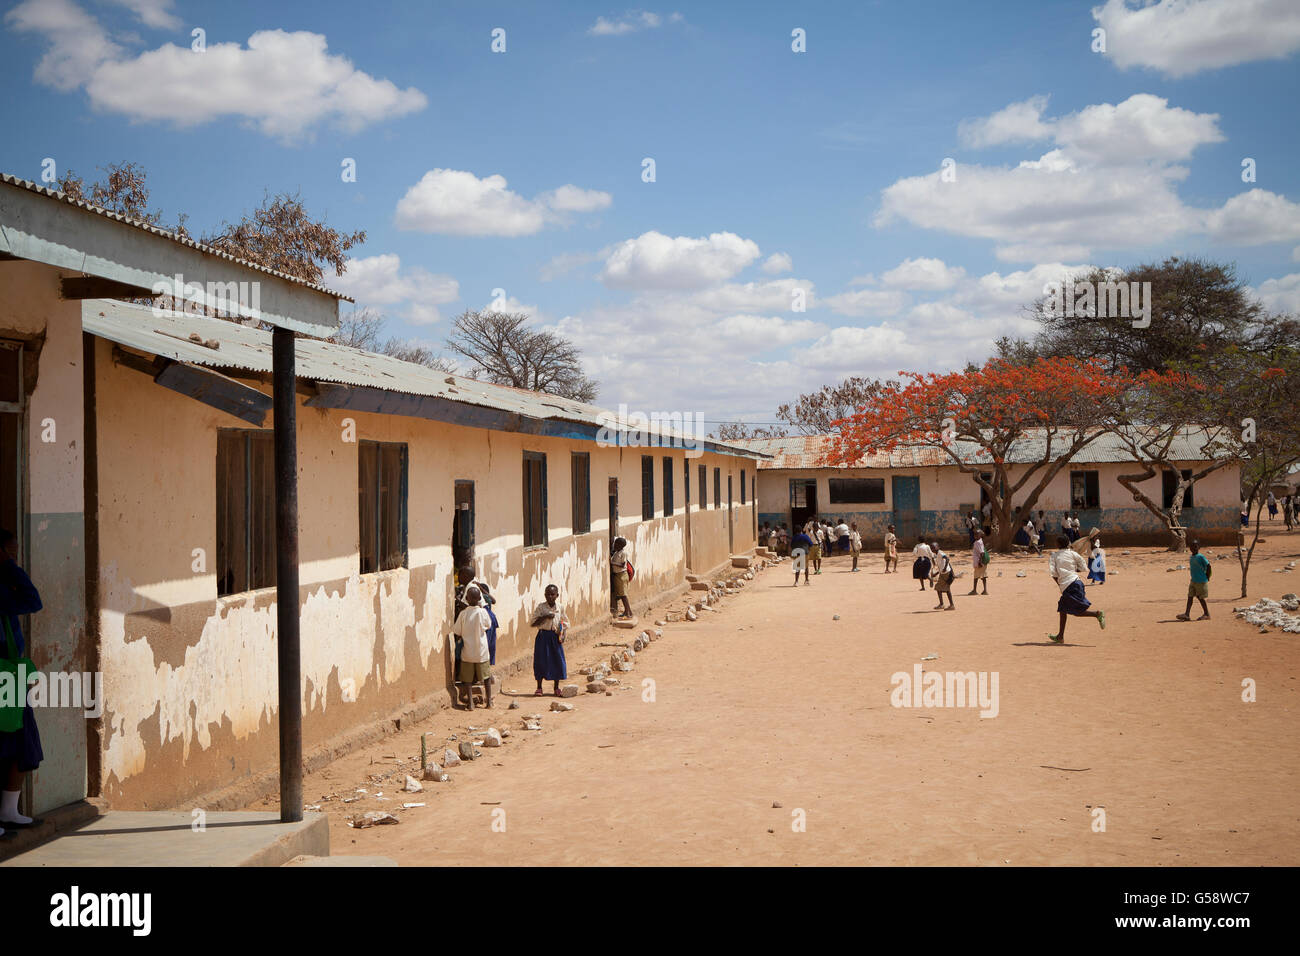 Students attend primary school in rural Dodoma Region, Tanzania. Stock Photo